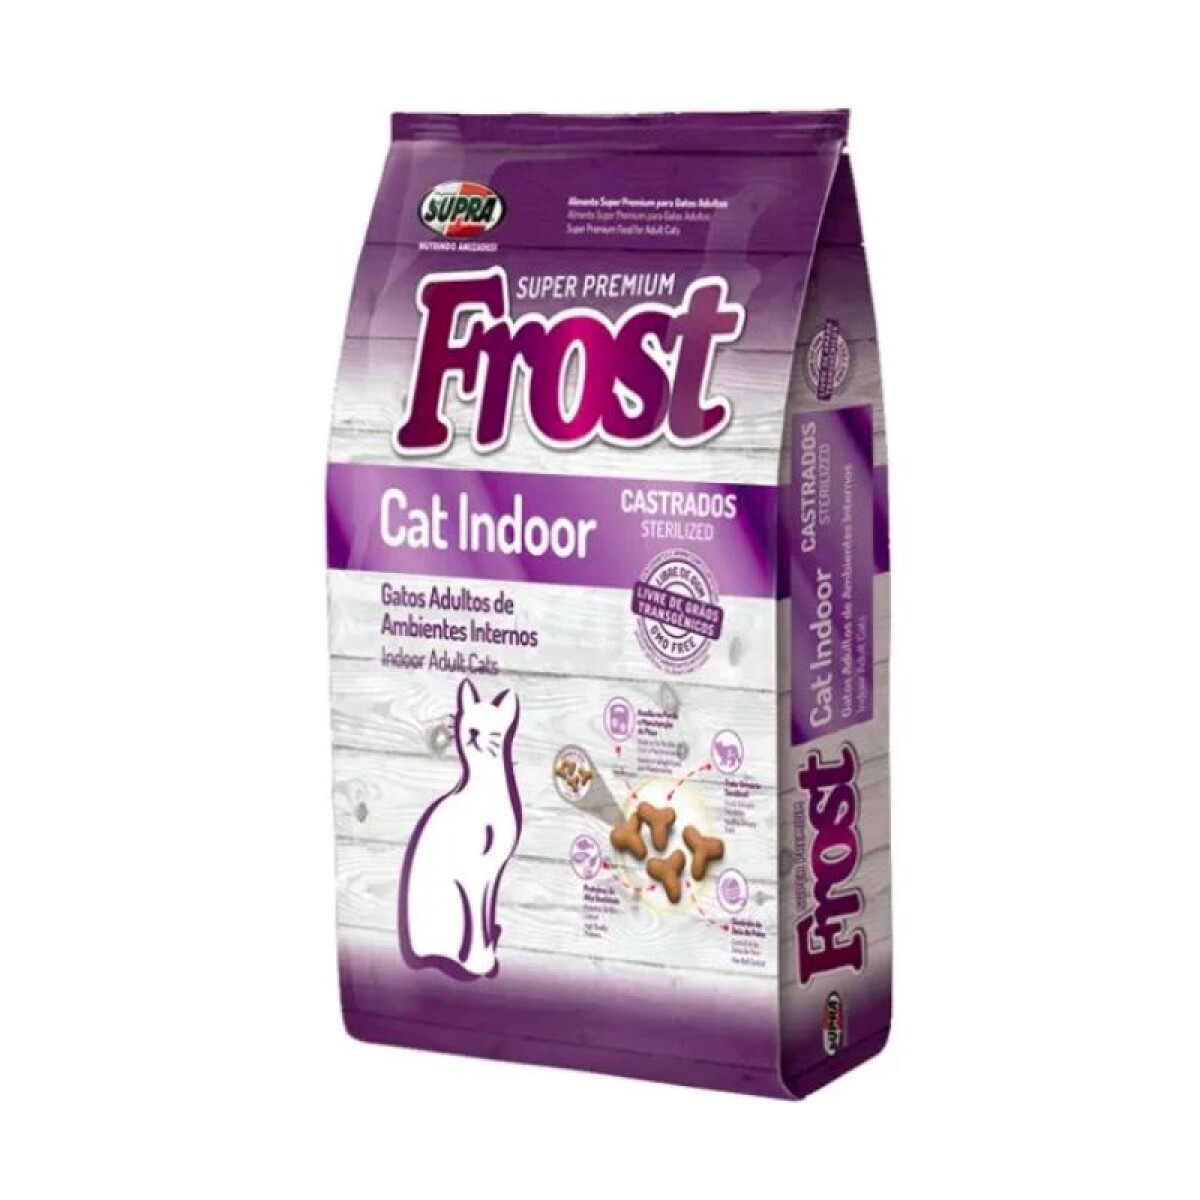 FROST CAT INDOOR 7.5 KG - Frost Cat Indoor 7.5 Kg 